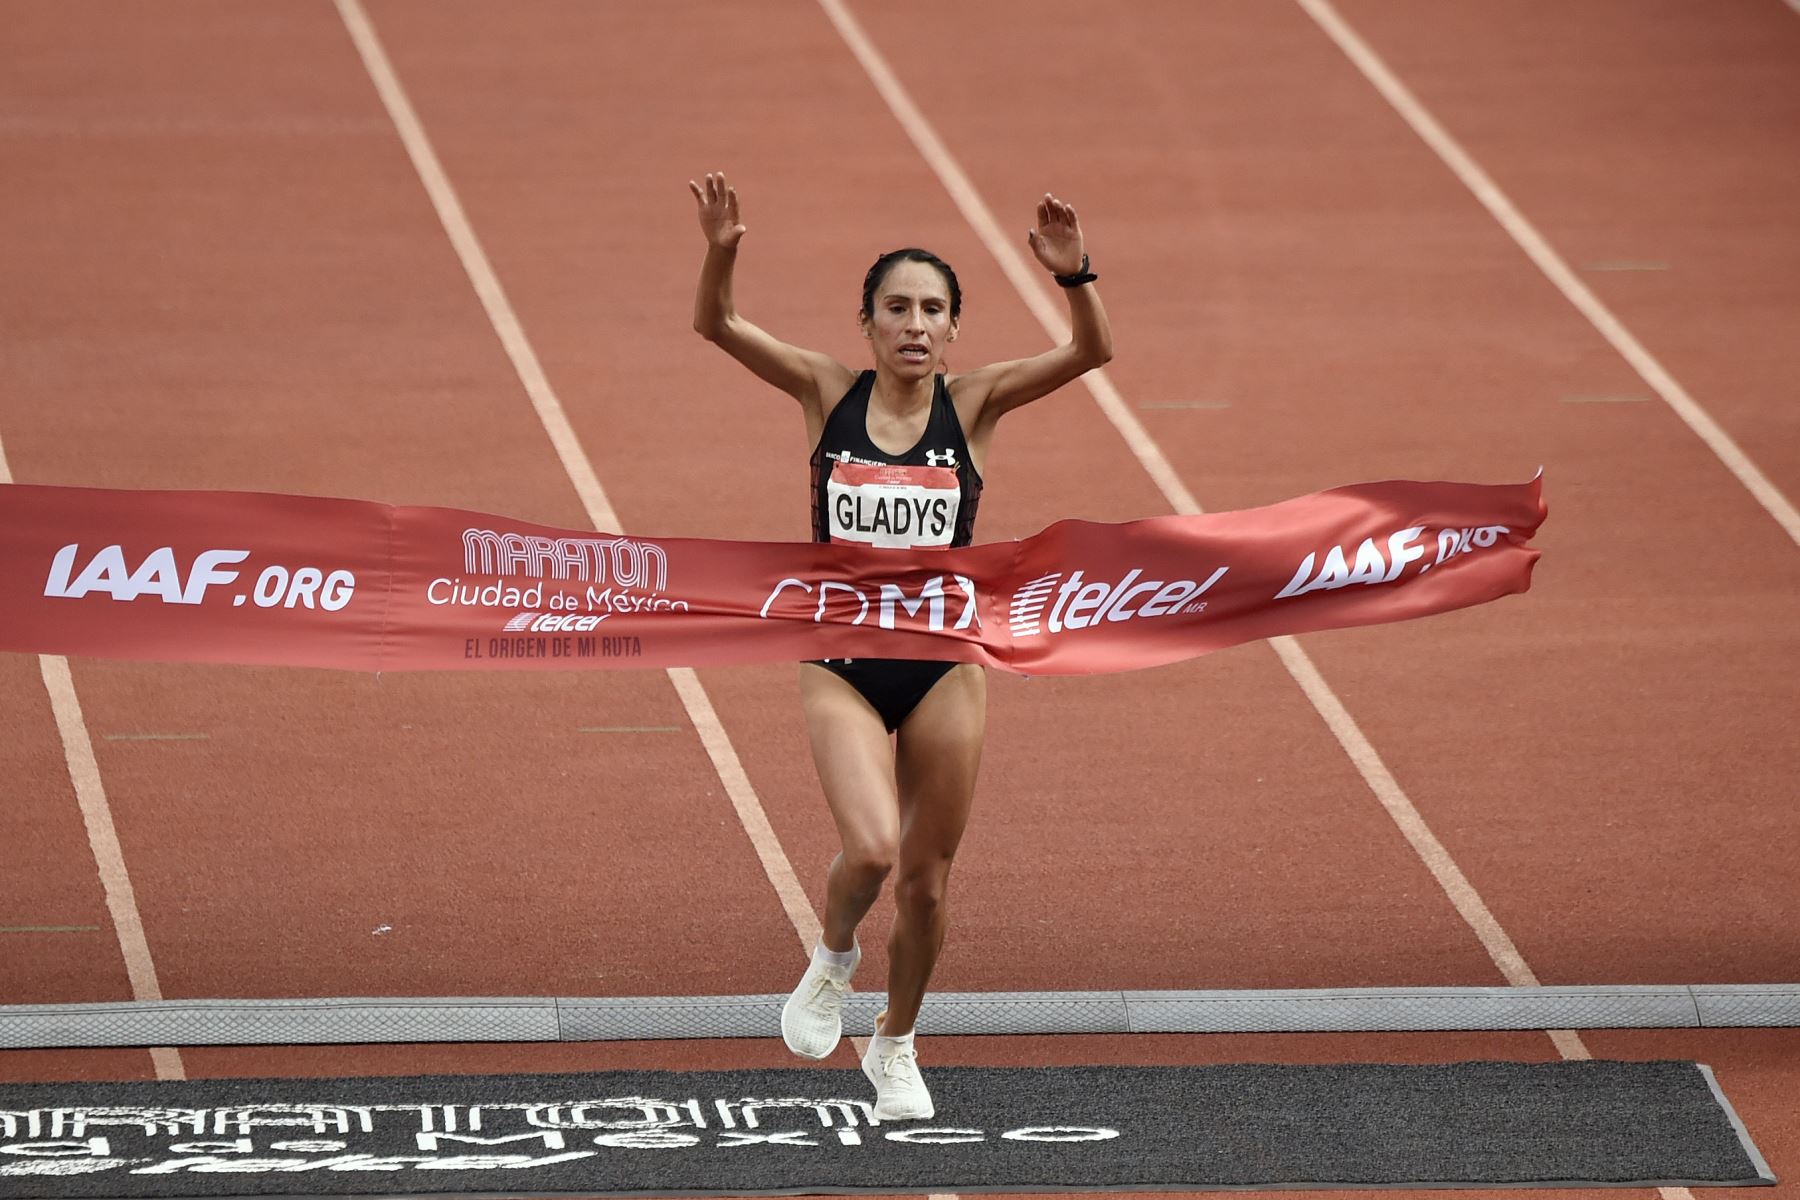 La corredora peruana Gladys Tejeda celebra después de ganar el Maratón Internacional de la Ciudad de México, en el estadio Olímpico Universitario el 27 de agosto de 2017. Foto: AFP